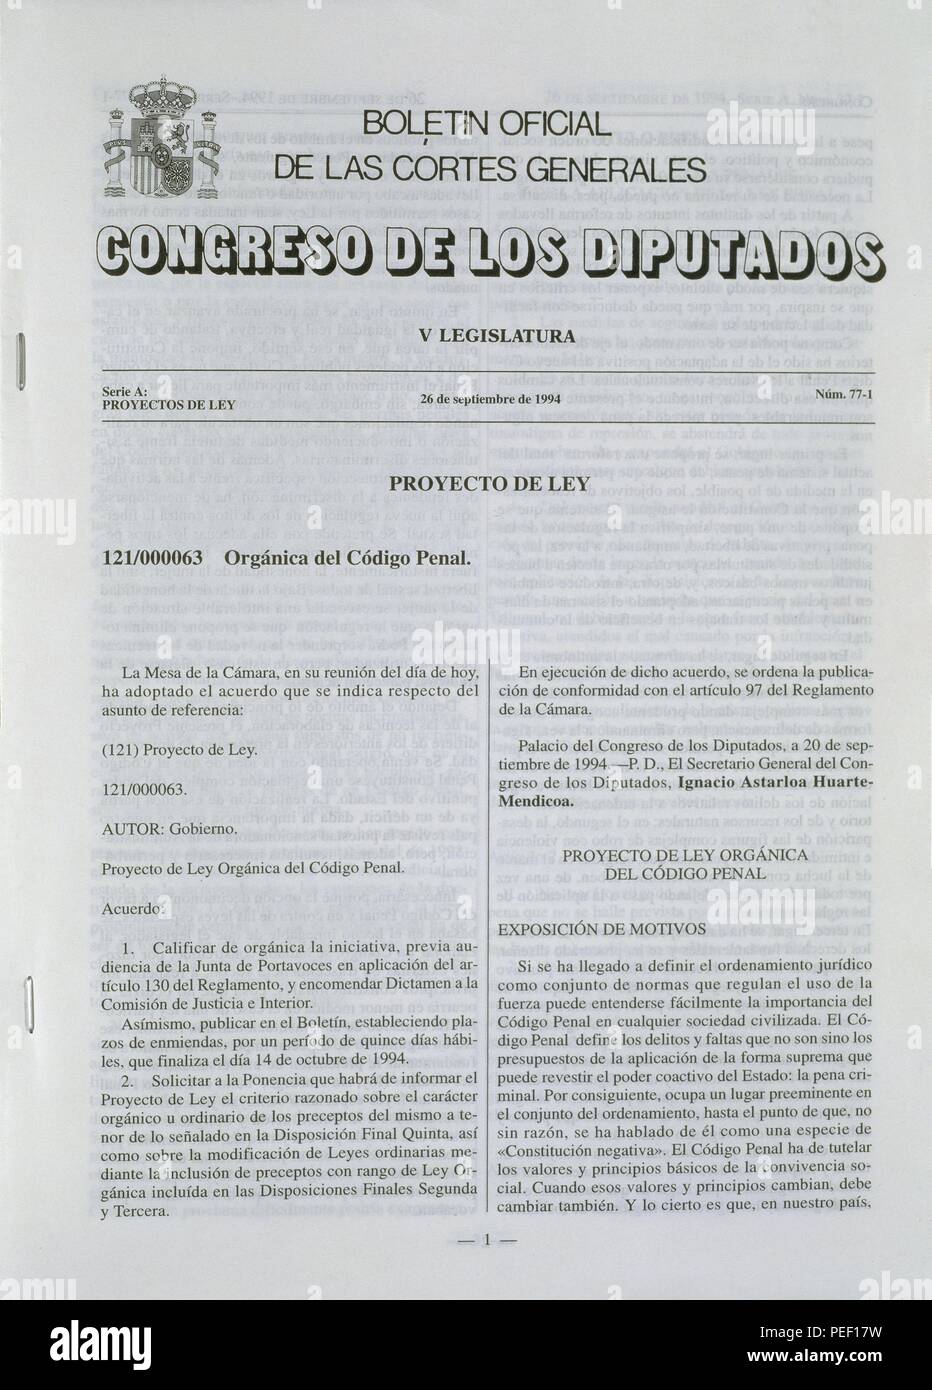 BOLETIN OFICIAL DE LAS CORTES GENERALES - CONGRESO DE LOS DIPUTADOS -  PROYECTO DE LEY ORGANICA DEL CODIGO PENAL - 1994. Location: CONGRESO DE LOS  DIPUTADOS-BIBLIOTECA, MADRID, SPAIN Stock Photo - Alamy